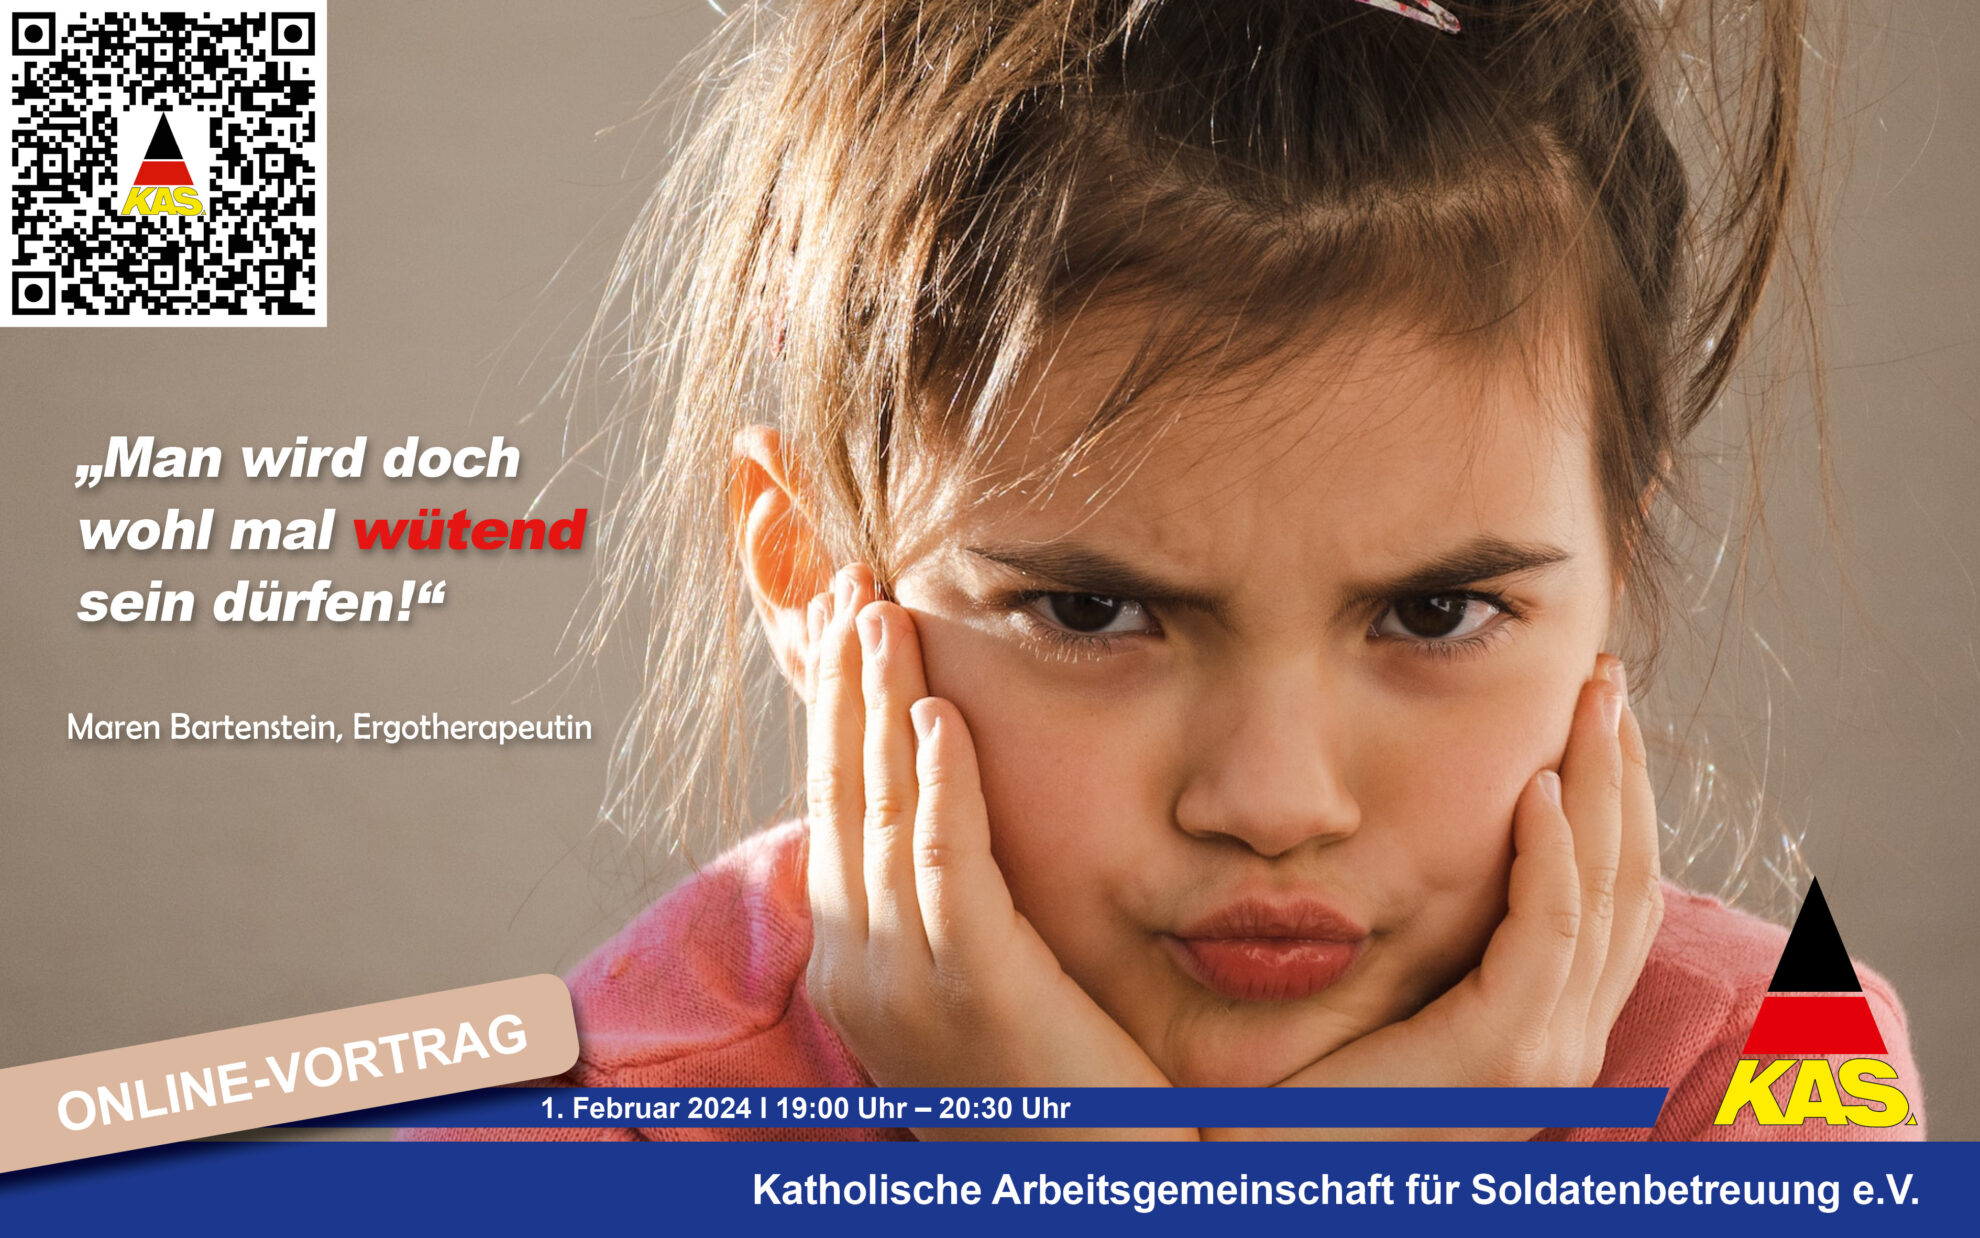 Bild für Online-Vortrag zum Thema "Wut bei Kindern" am 1. Februar 2024